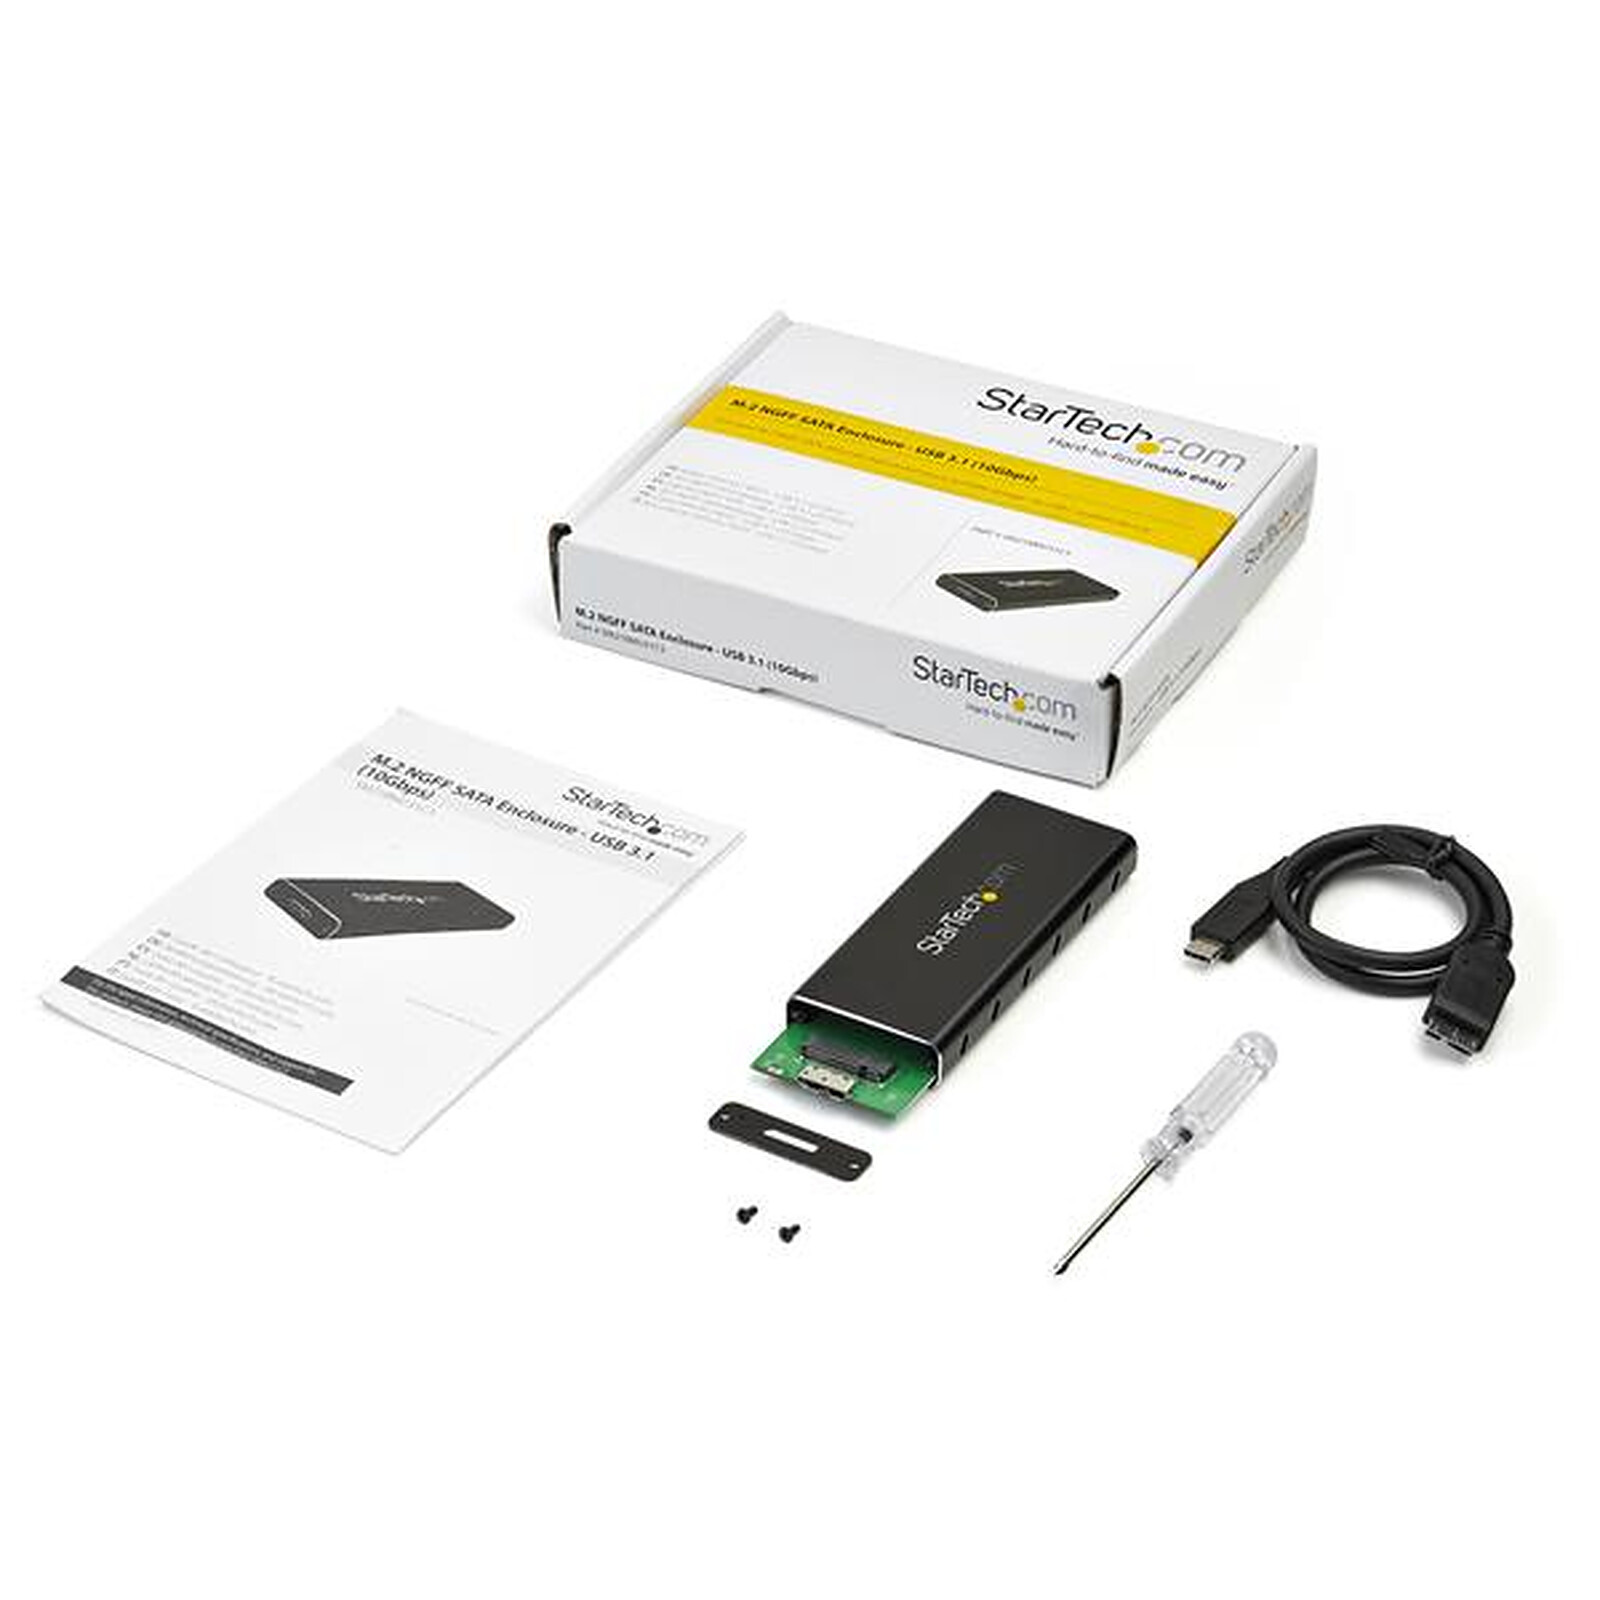 Startech : BOITIER USB 3.1 DUAL SLOT pour SSD M.2 SATA - RAID